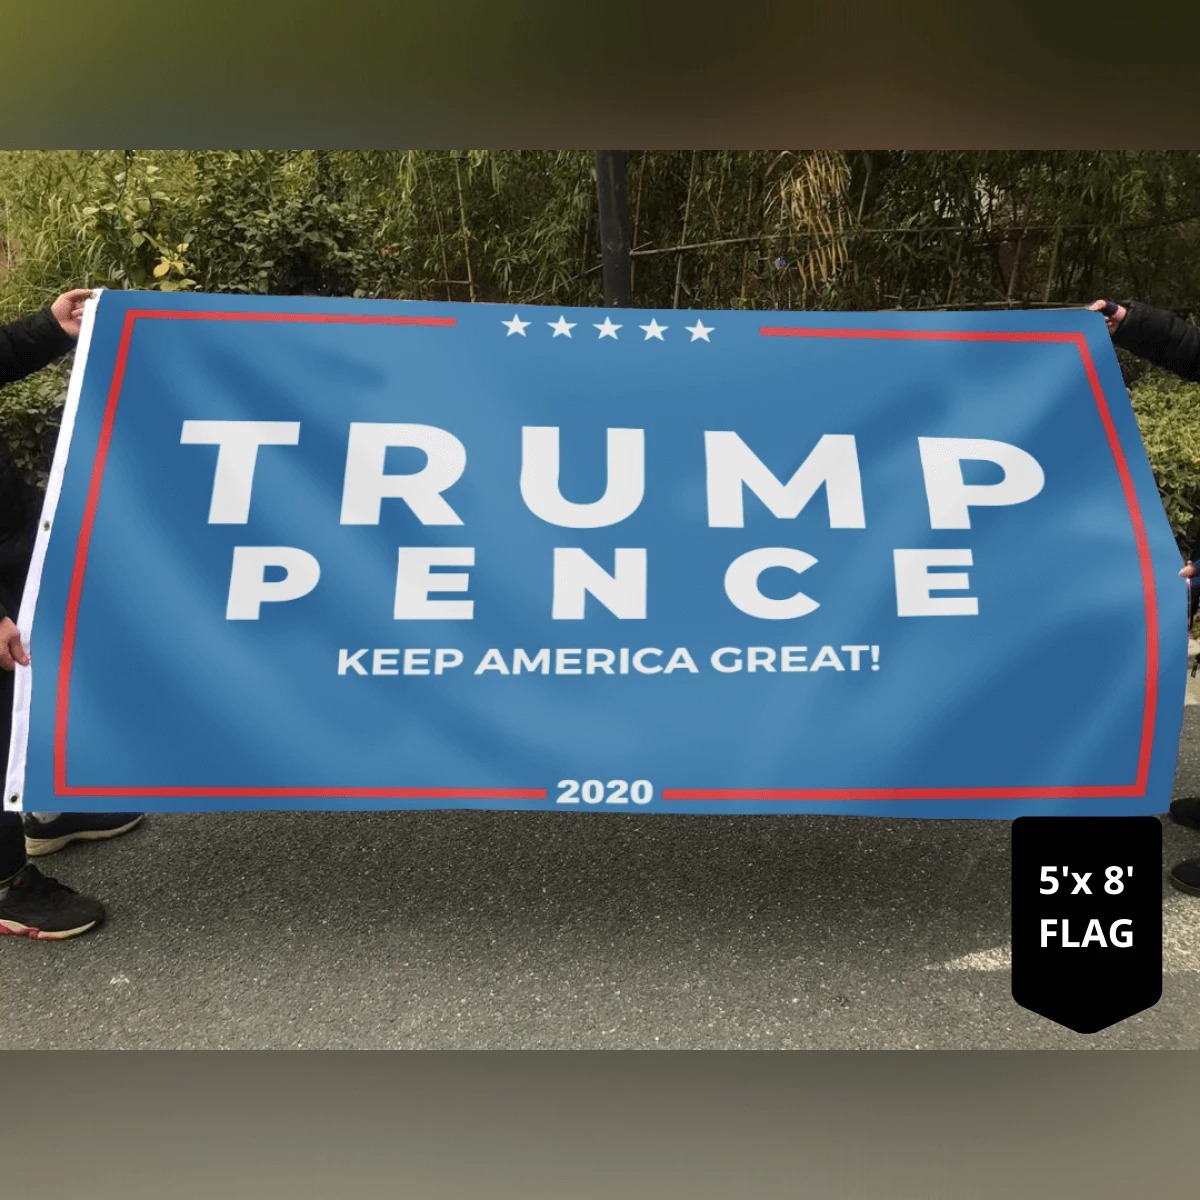 Trump pence keep America great flag2